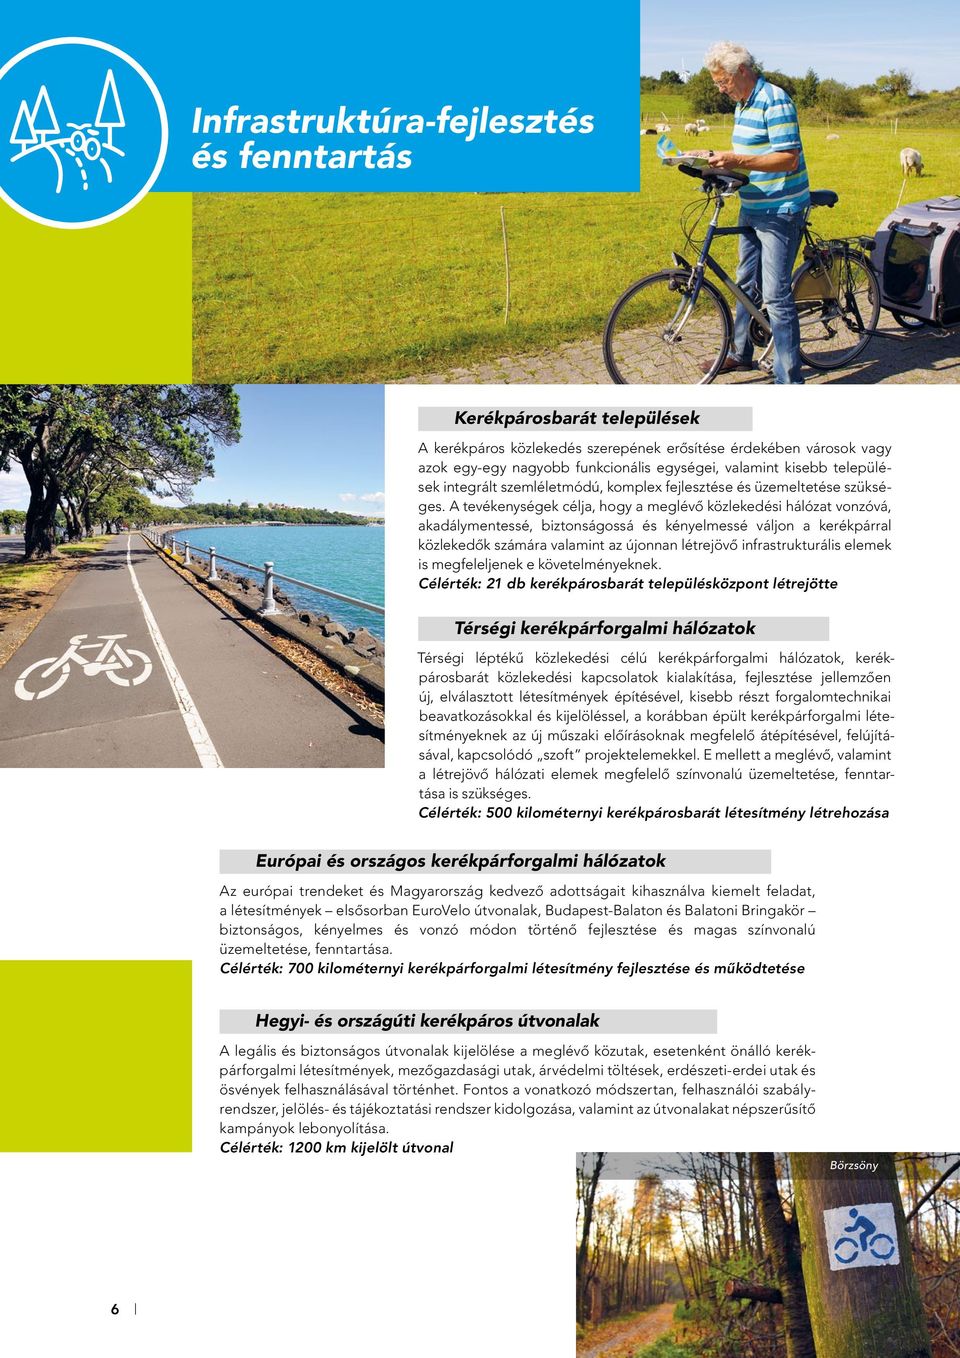 A tevékenységek célja, hogy a meglévô közlekedési hálózat vonzóvá, akadálymentessé, biztonságossá és kényelmessé váljon a kerékpárral közlekedôk számára valamint az újonnan létrejövô